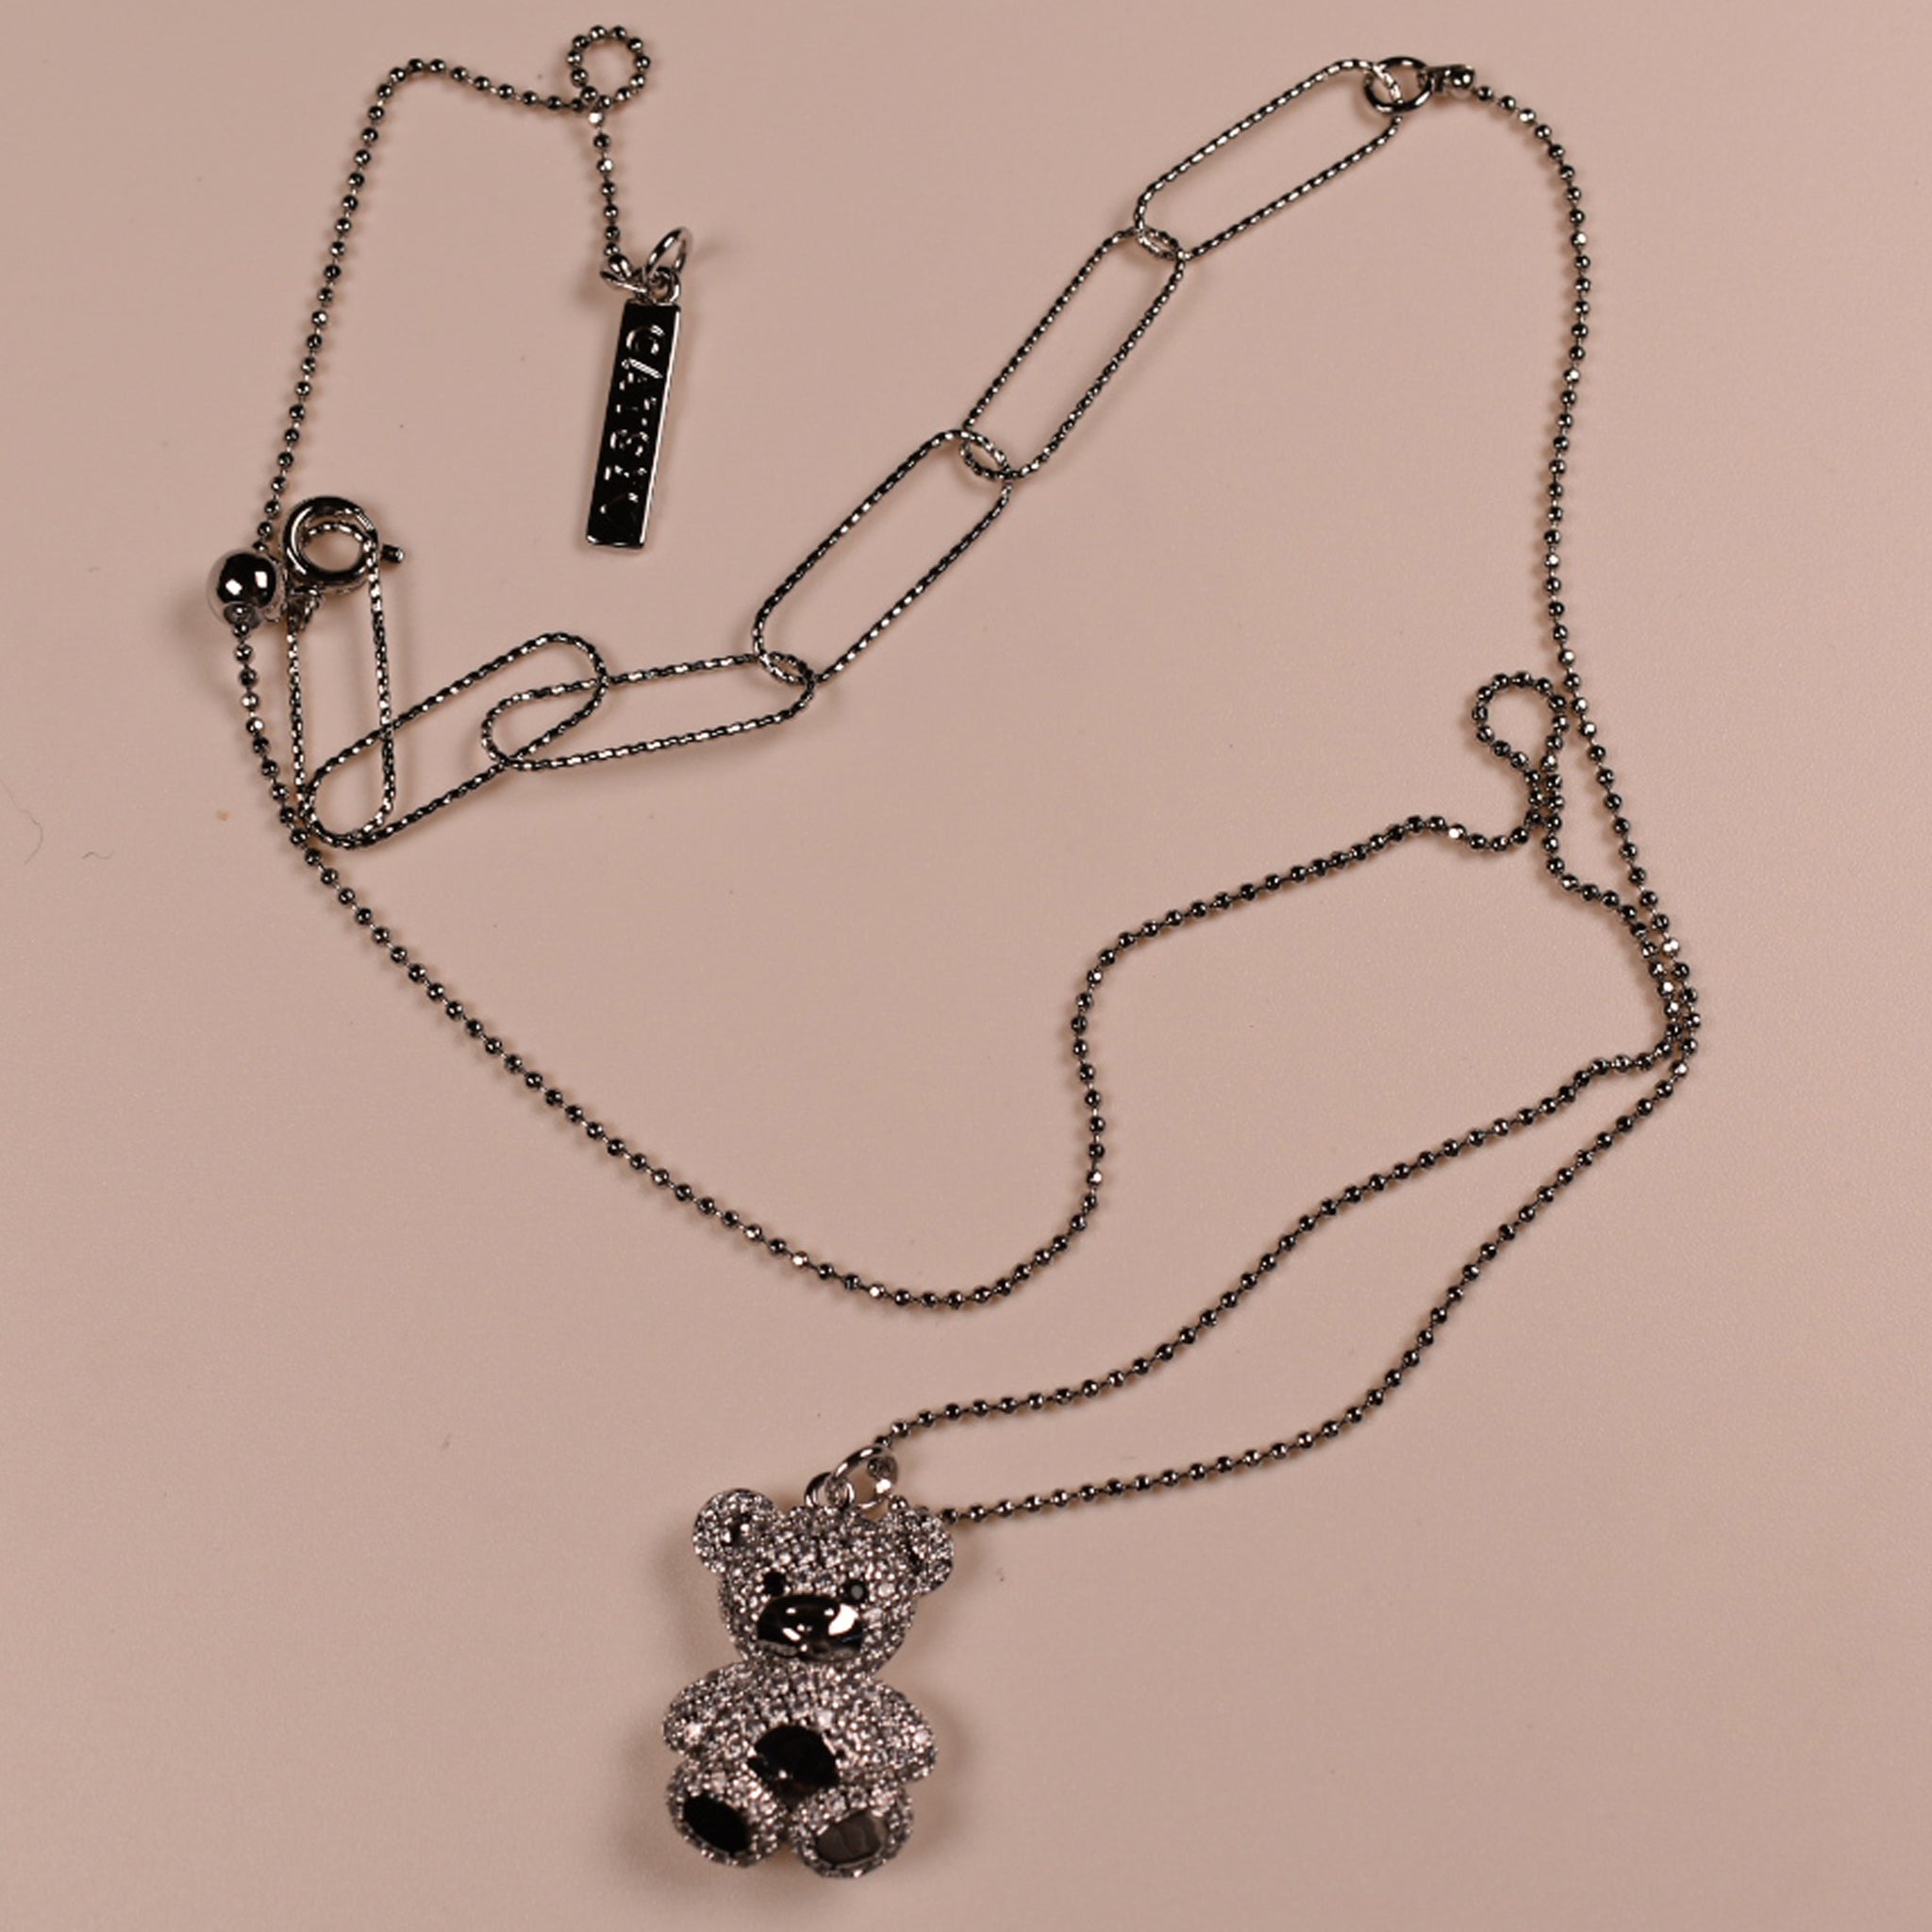 Pearls of Korea - Cute Teddy Silver Necklace